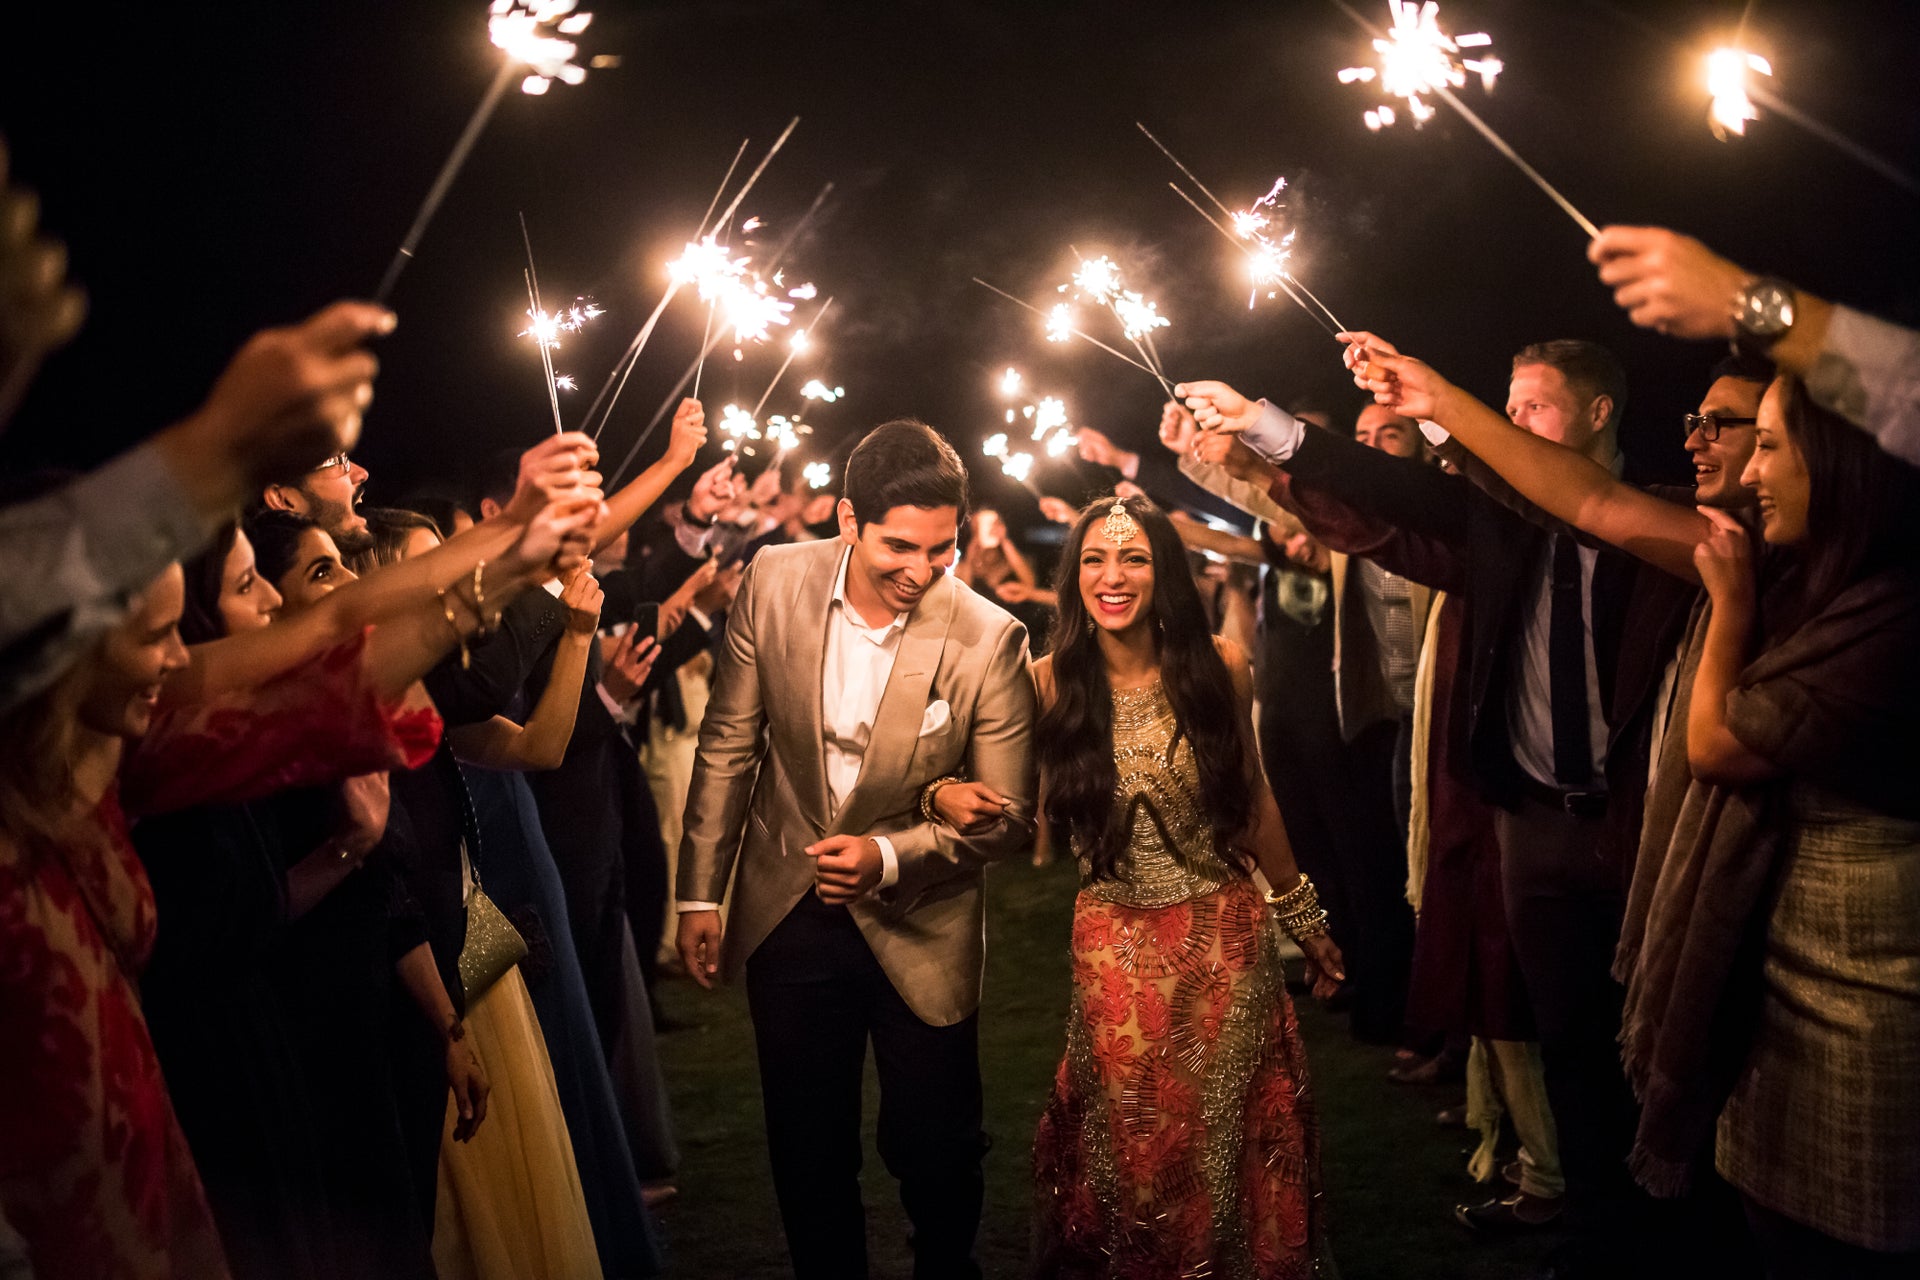 Bengalas en la boda de los recién casados en manos de alegres